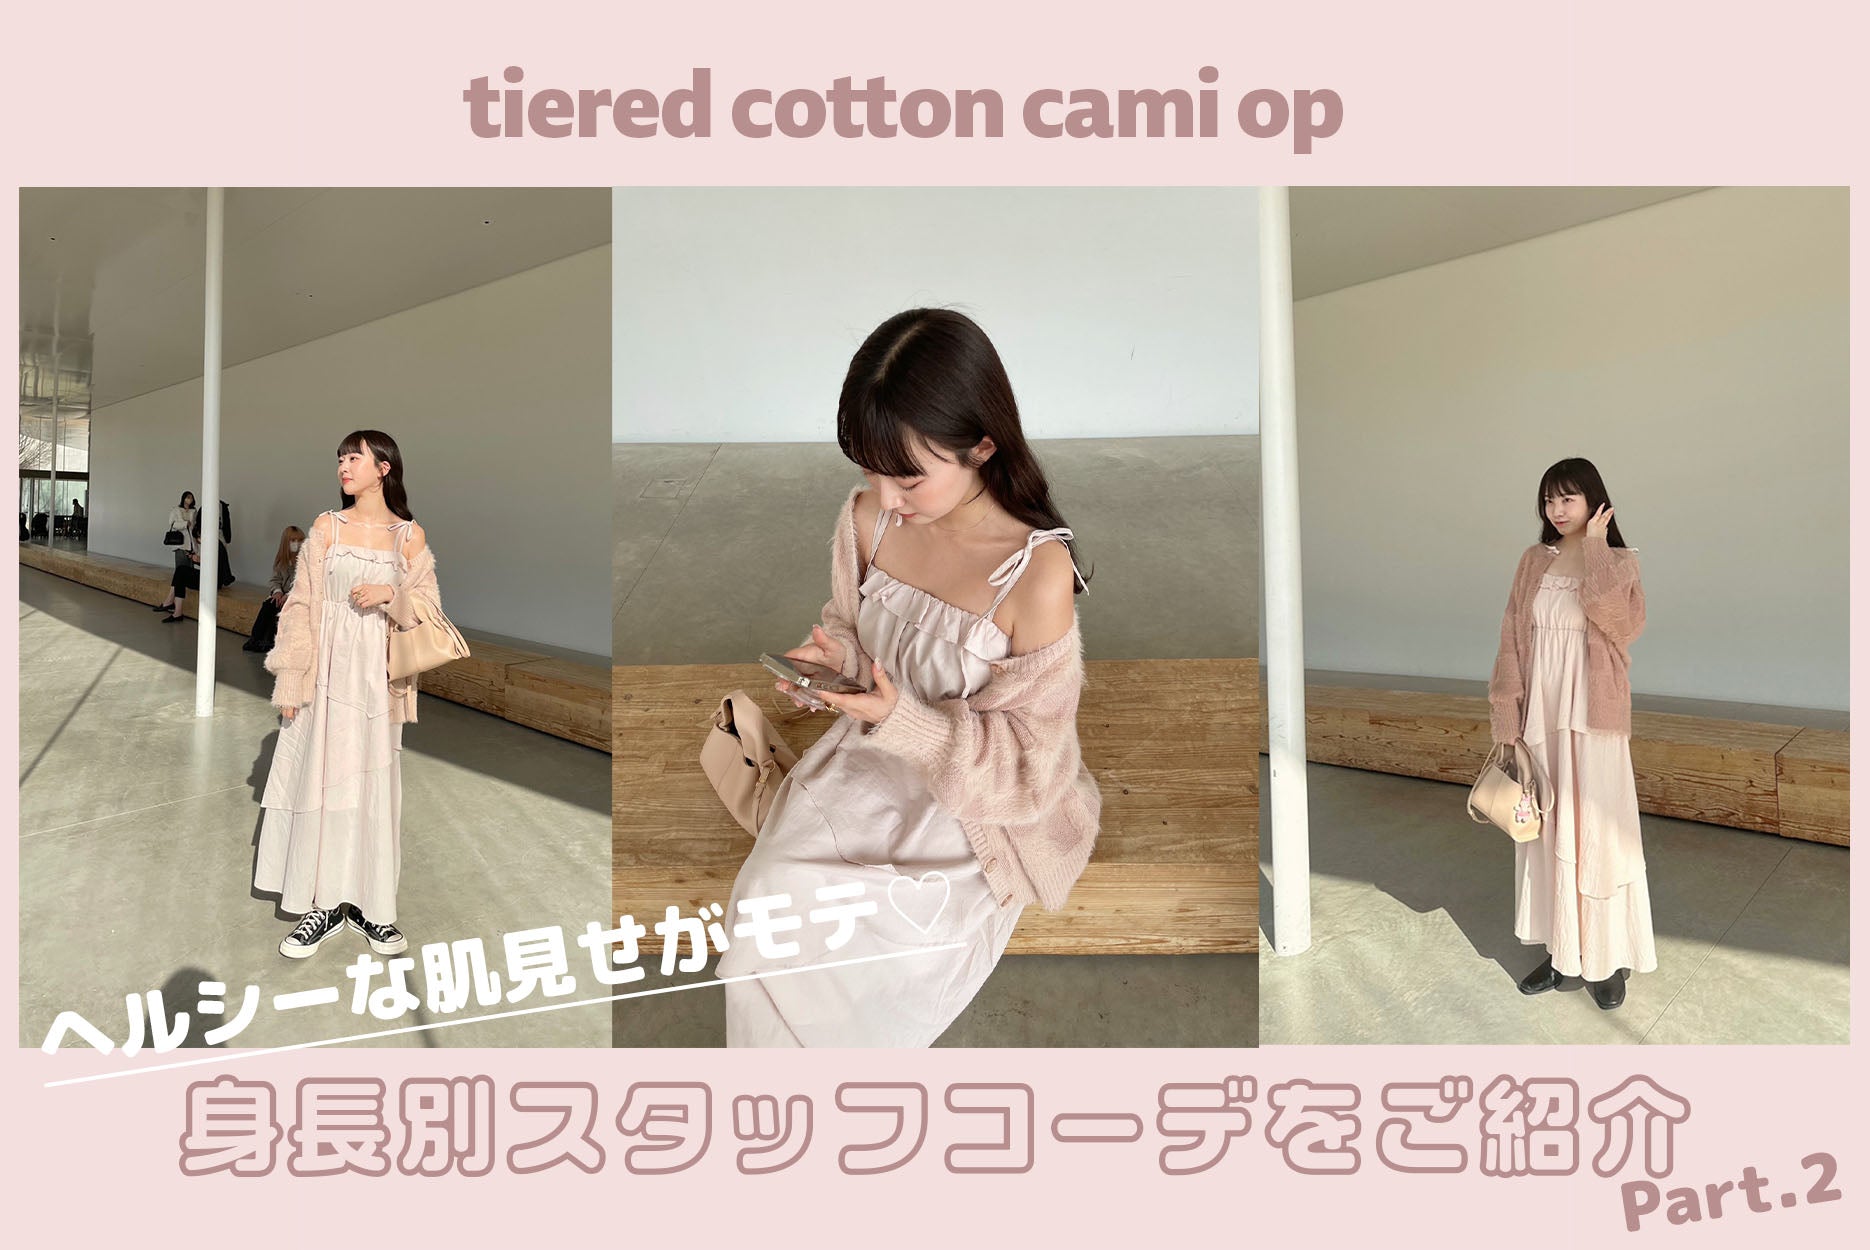 【値下げ中】muguet tiered cotton cami opワンピース